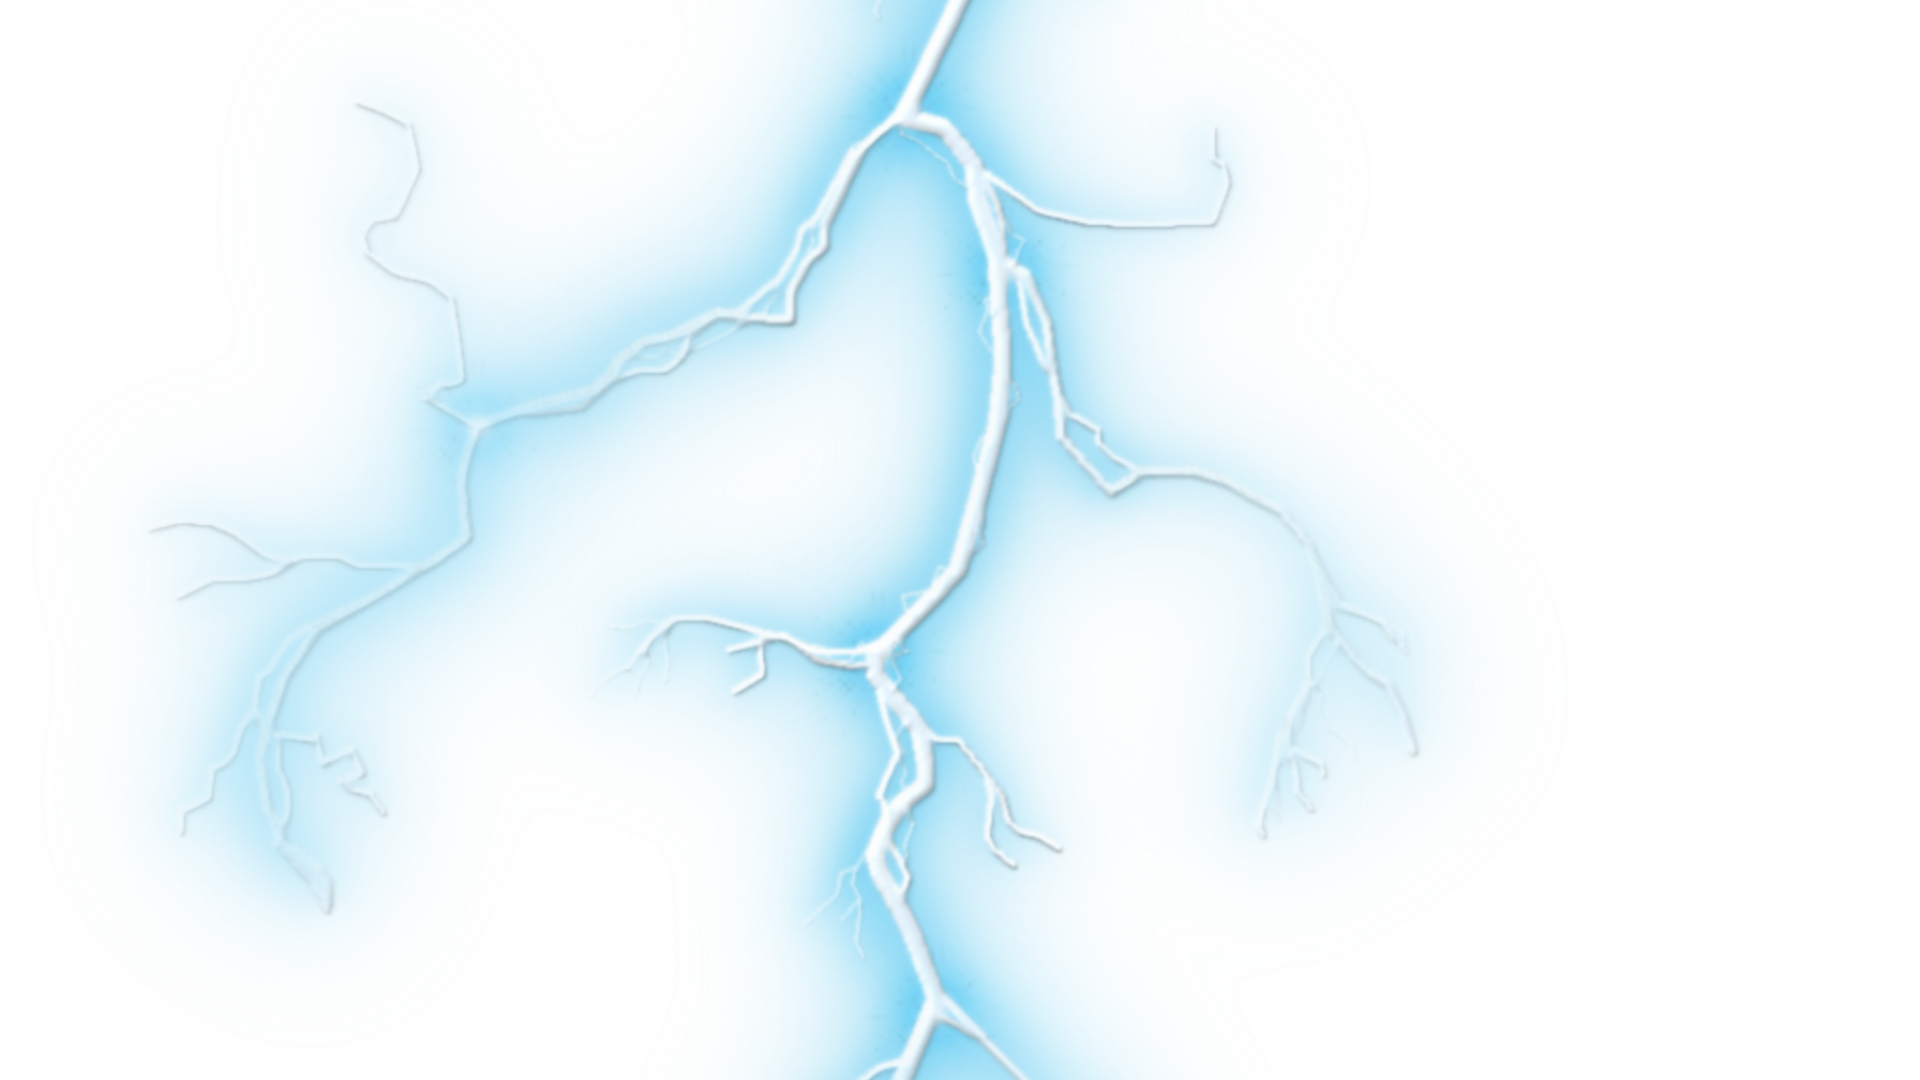 lightning png transparent background